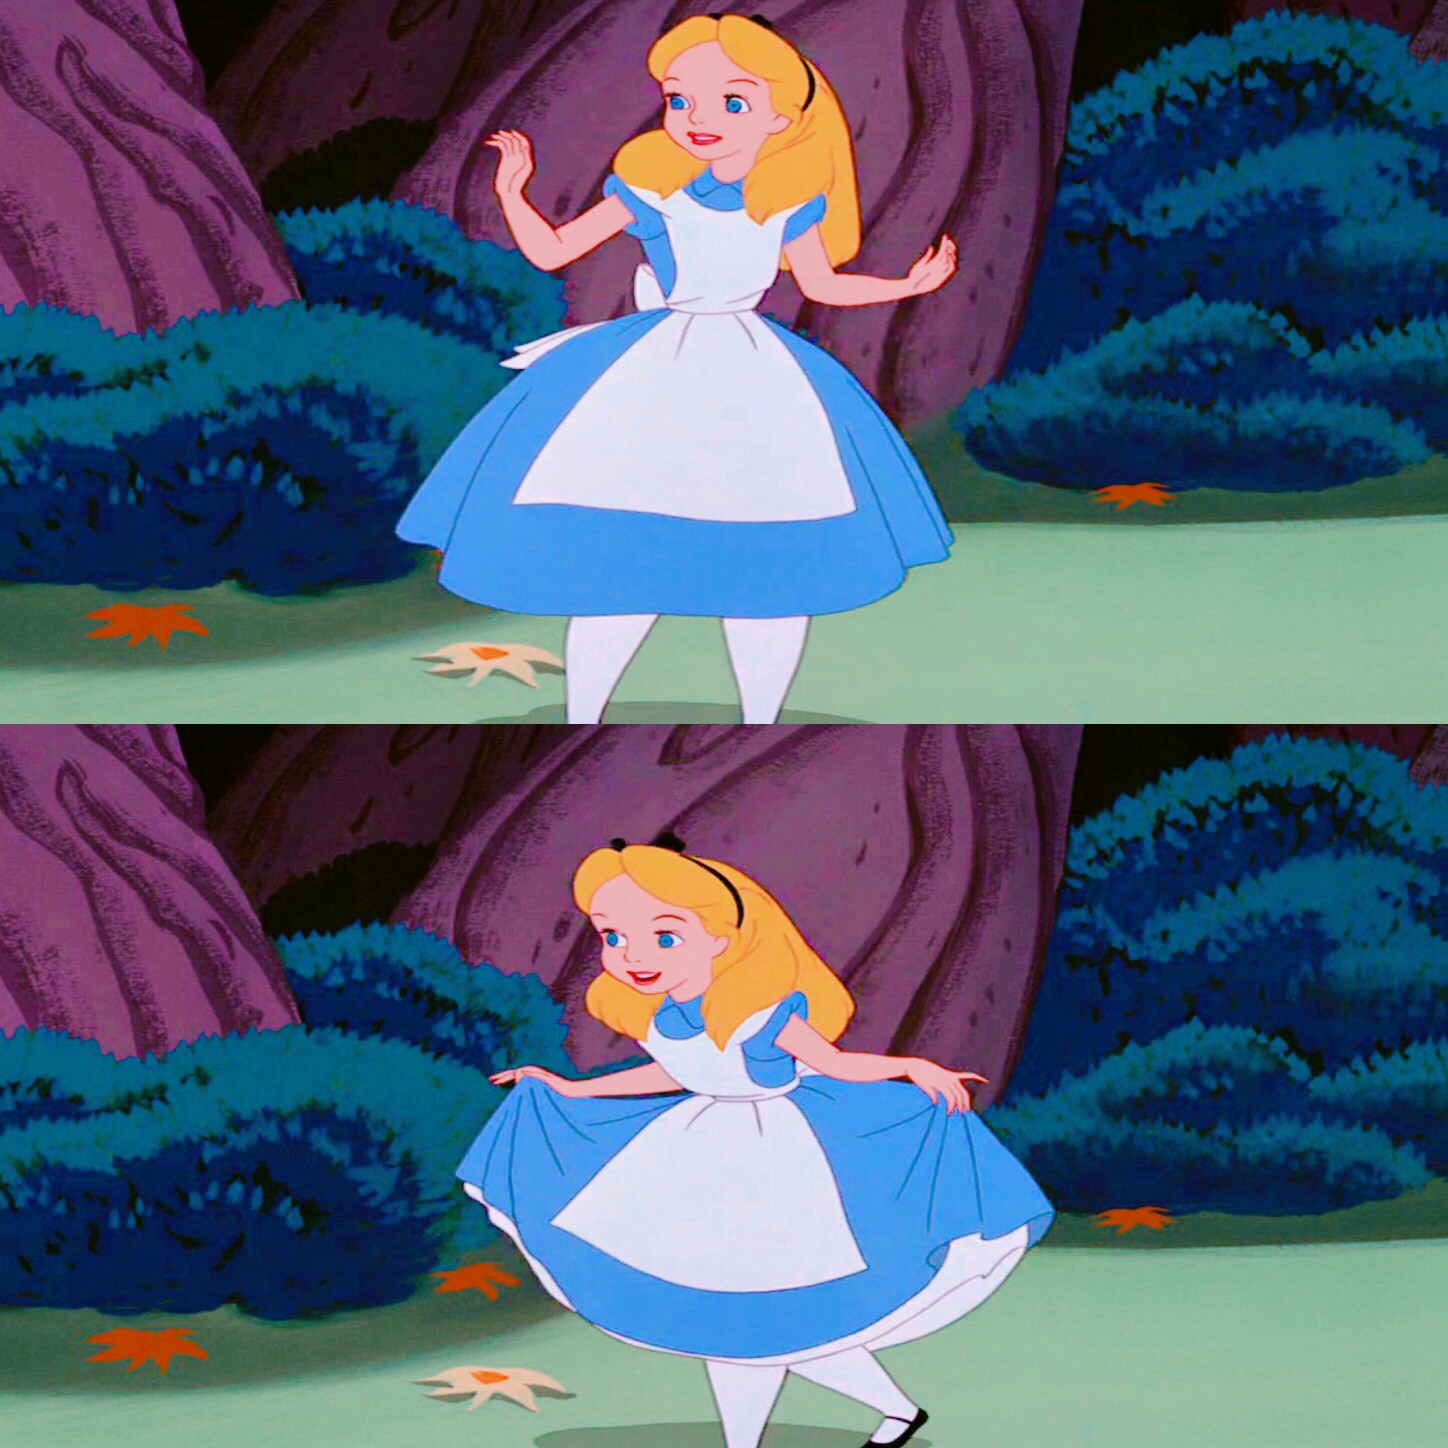 迪士尼公主 爱丽丝梦游仙境 高清 无水印 头像 背景图 壁纸